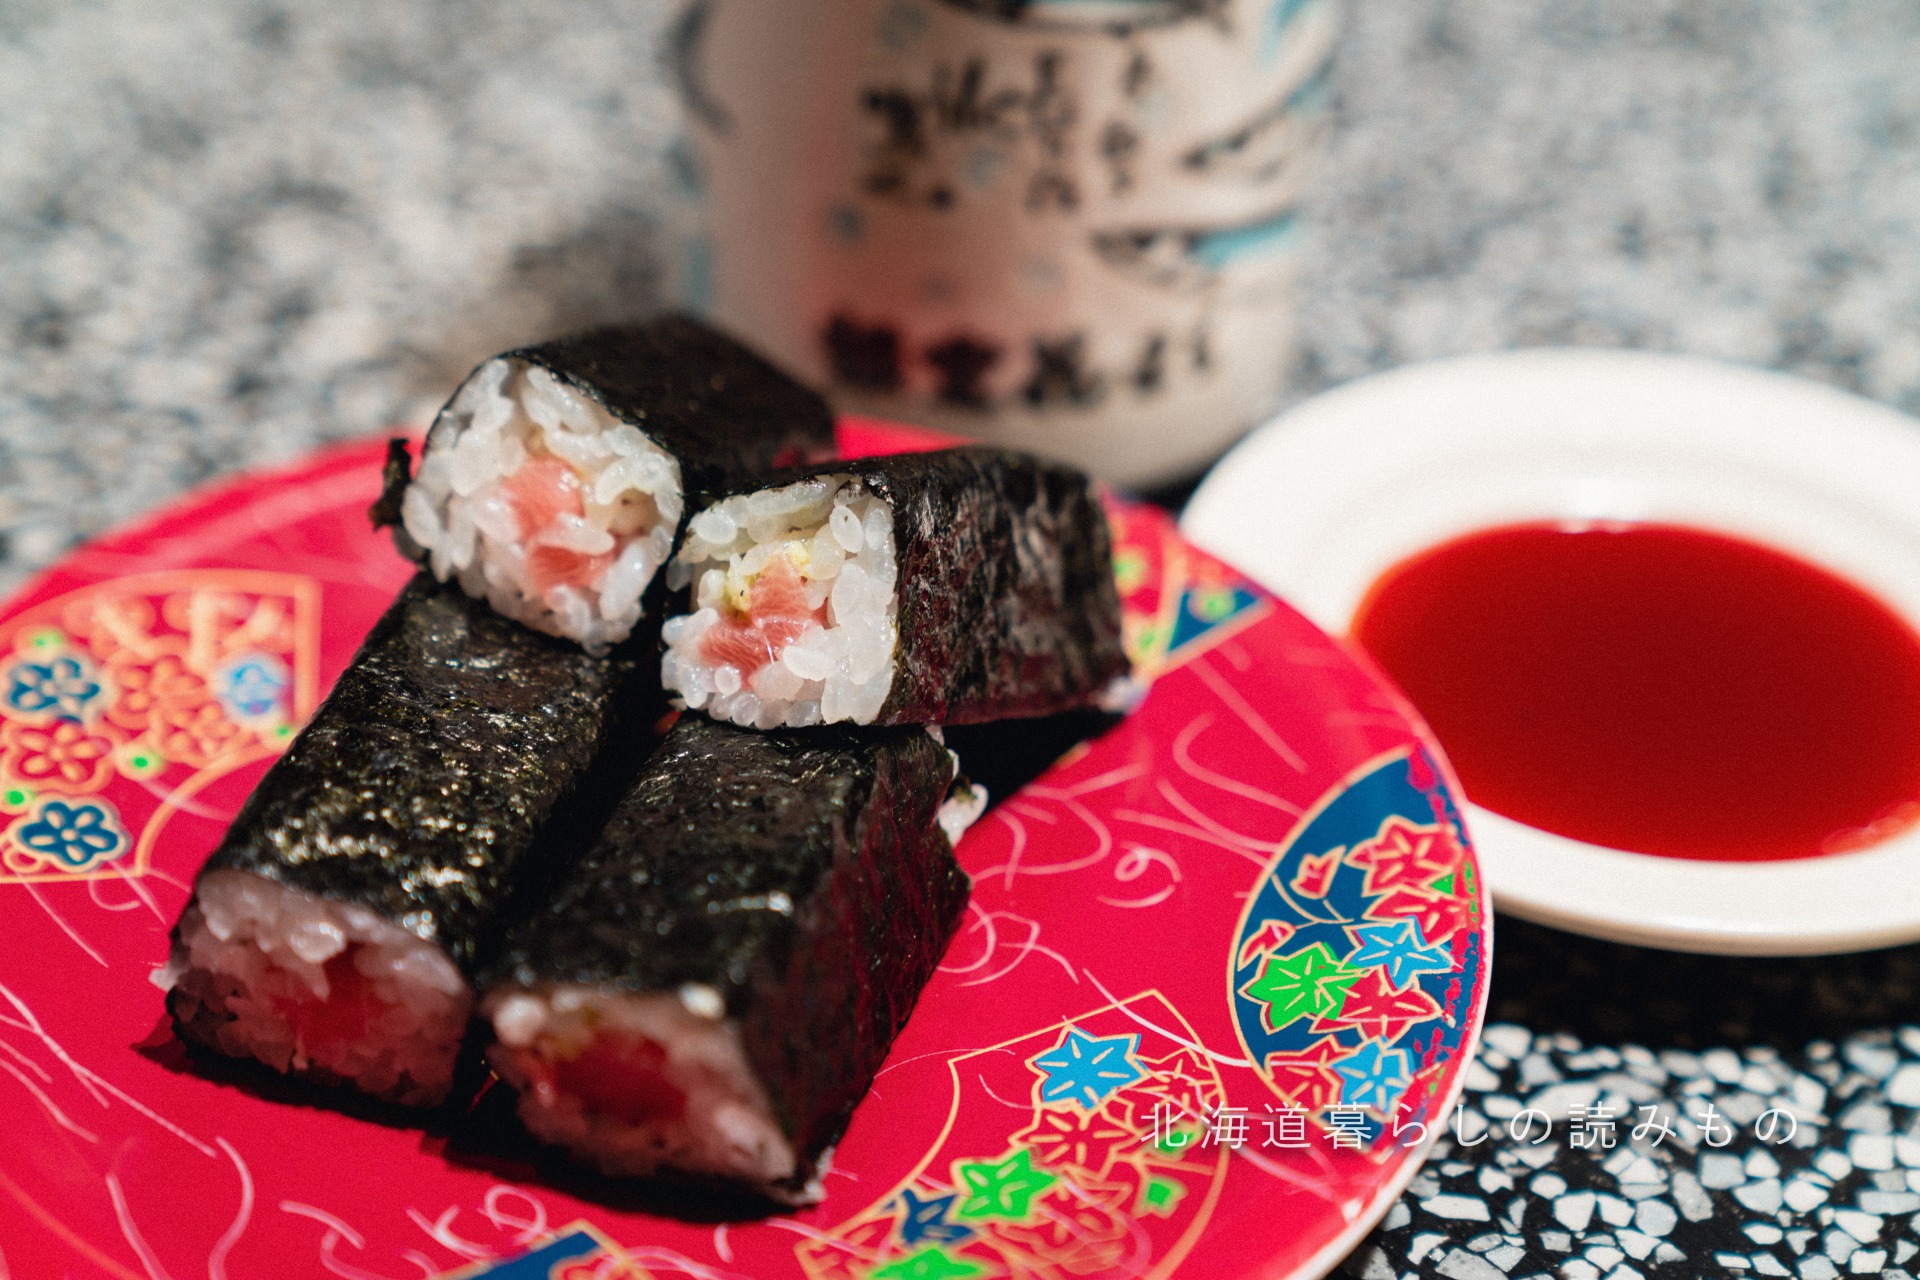 迴轉壽司根室花丸的菜單上的「大西洋藍鰭金槍魚巻壽司」